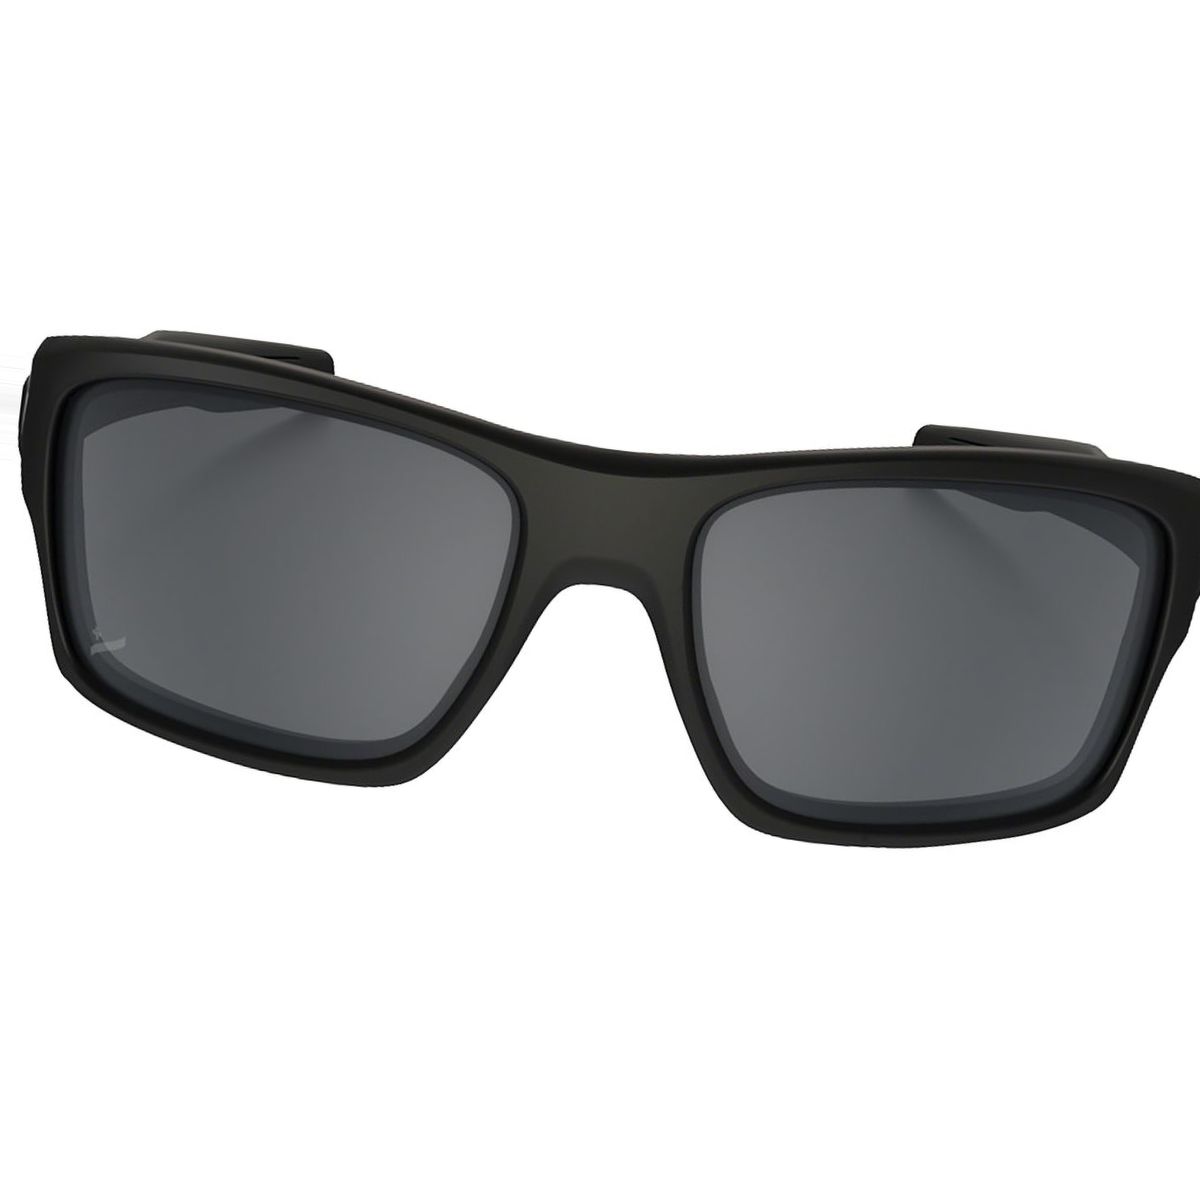 Oakley Turbine Sunglasses - Men's